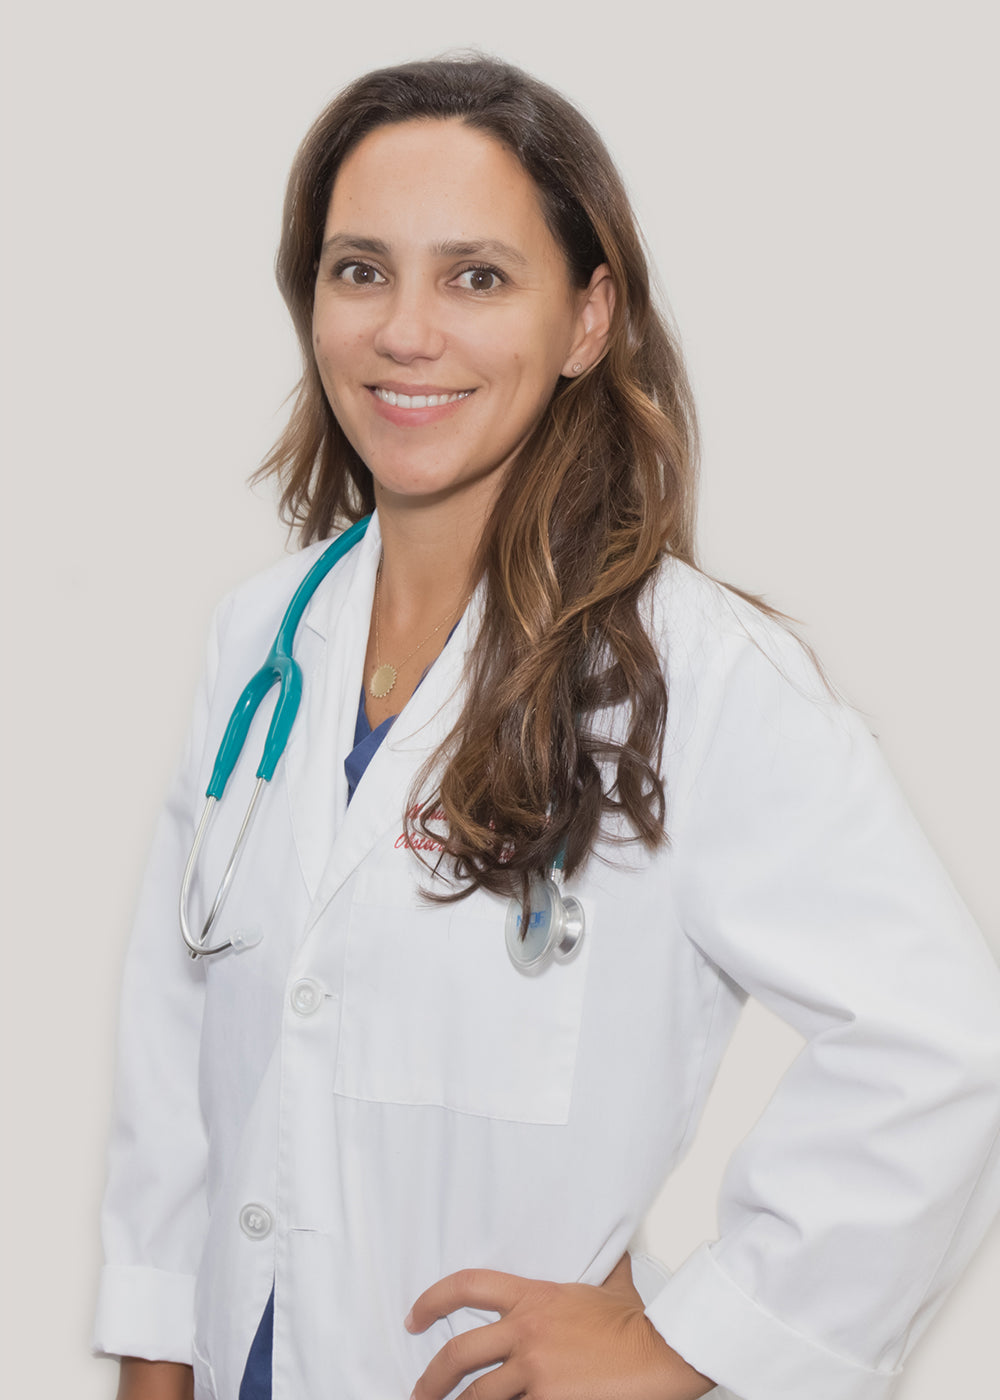 
                  Dr. Manuela Vazquez
                